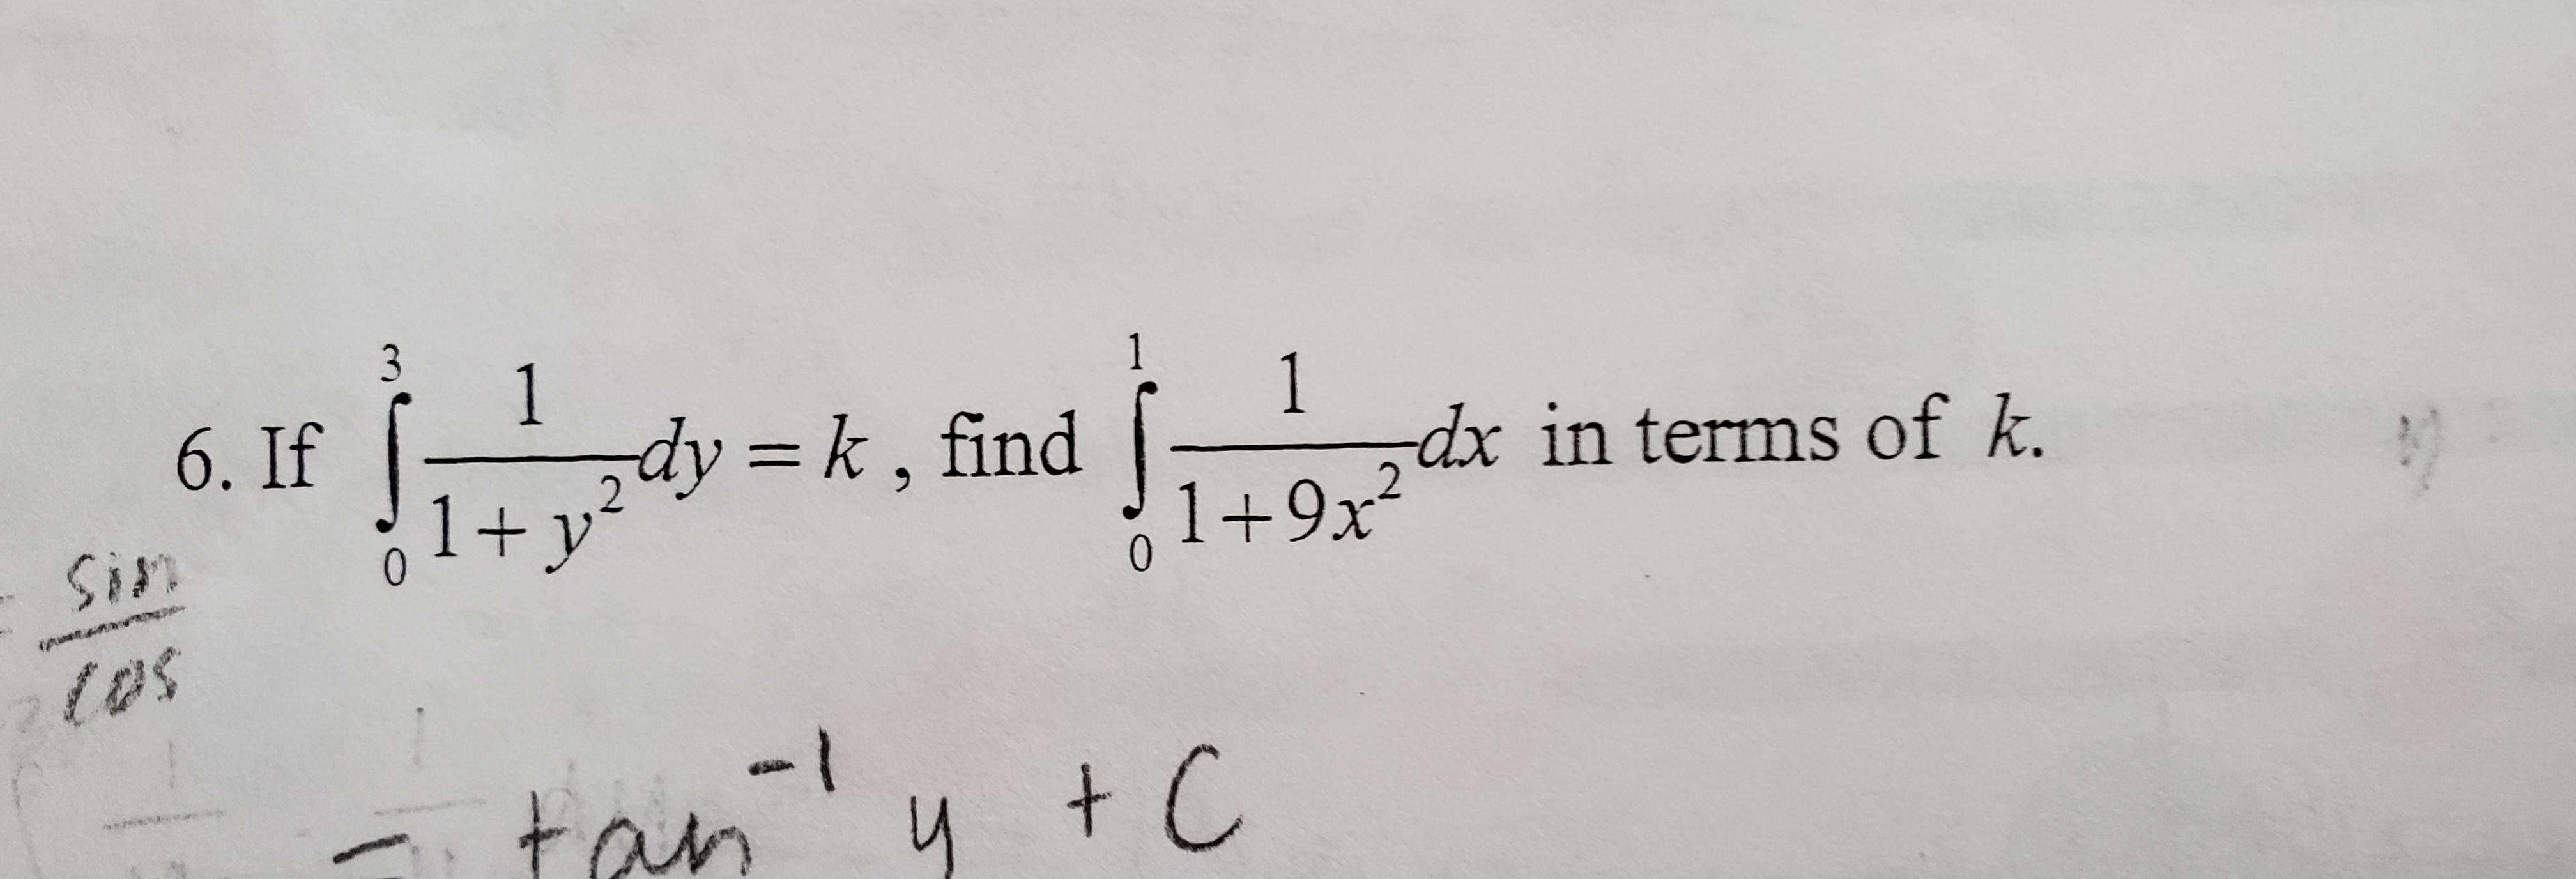 3
1
1
1
dx in terms of k.
6. If
dy k, find
1+y
1+9x2
0
Sin
(p
tos
- l
tan
+ C
